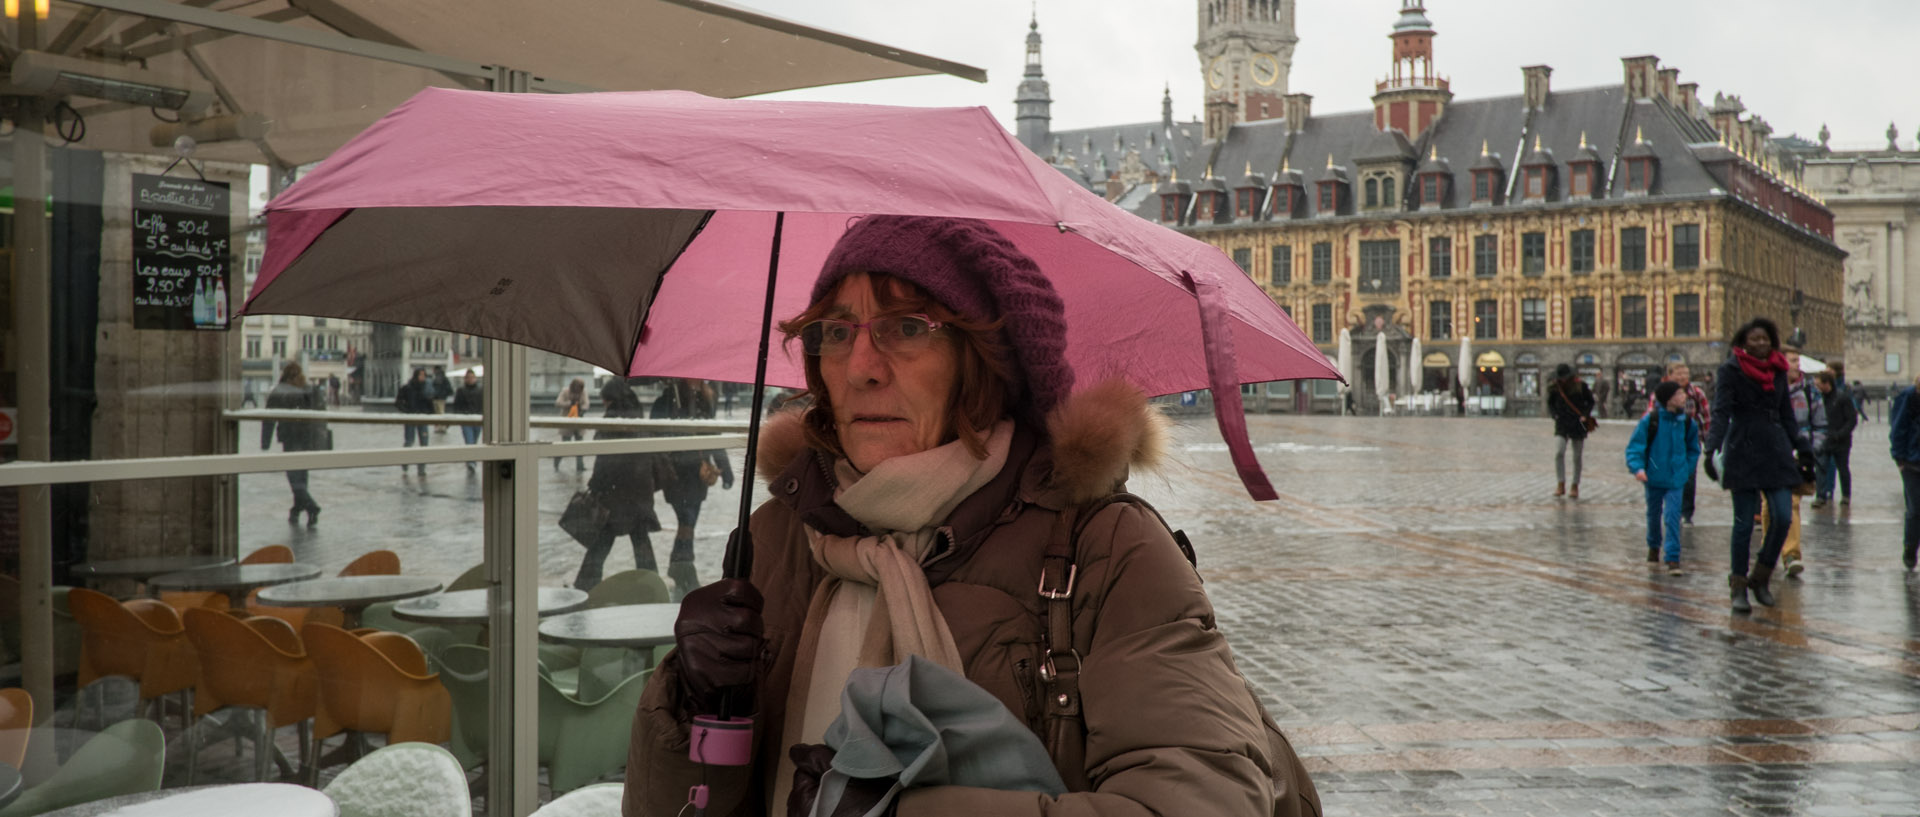 Femme avec un parapluie, place du Général-de-Gaulle, à Lille.